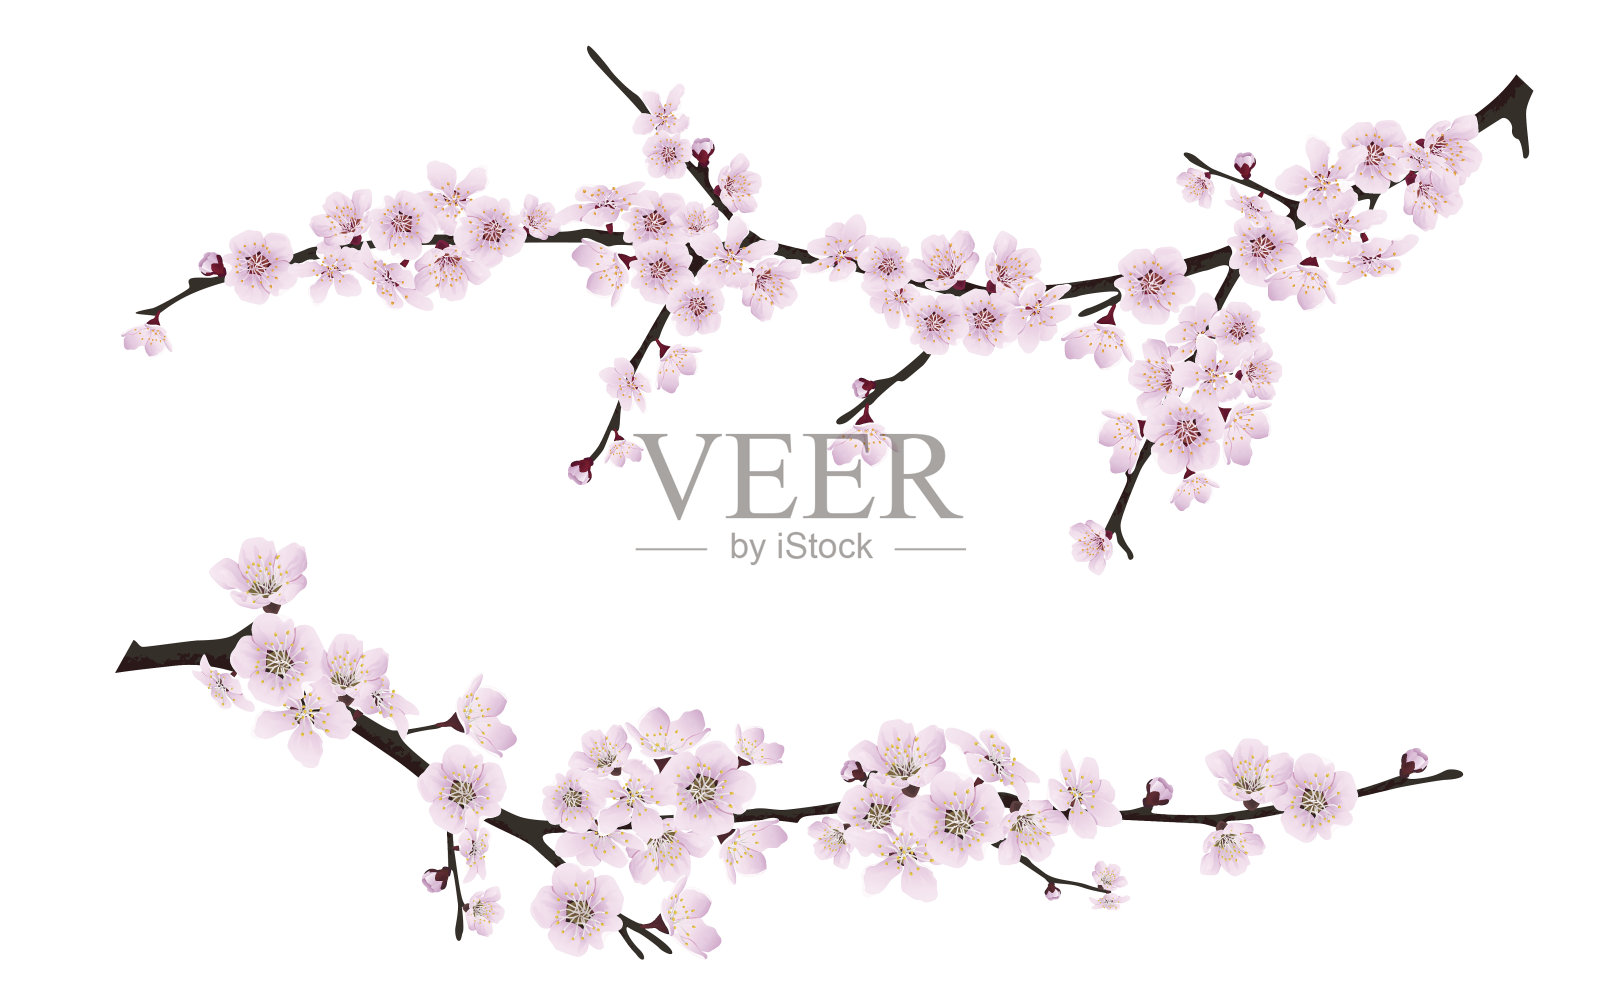 春天盛开的树枝上开满了粉红色的花朵插画图片素材